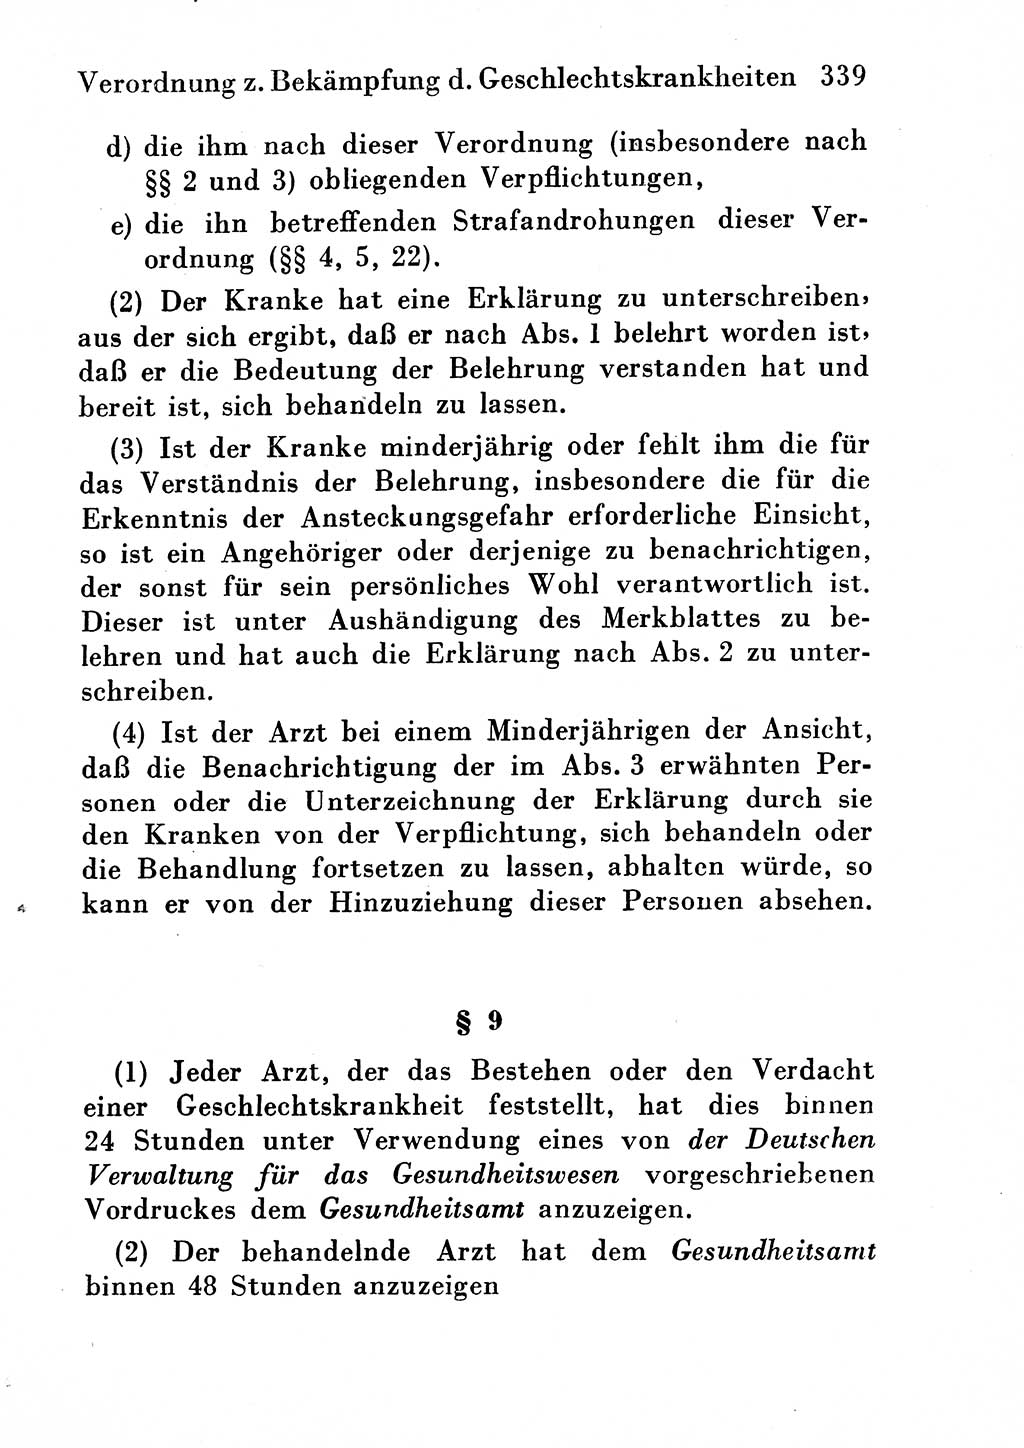 Strafgesetzbuch (StGB) und andere Strafgesetze [Deutsche Demokratische Republik (DDR)] 1954, Seite 339 (StGB Strafges. DDR 1954, S. 339)